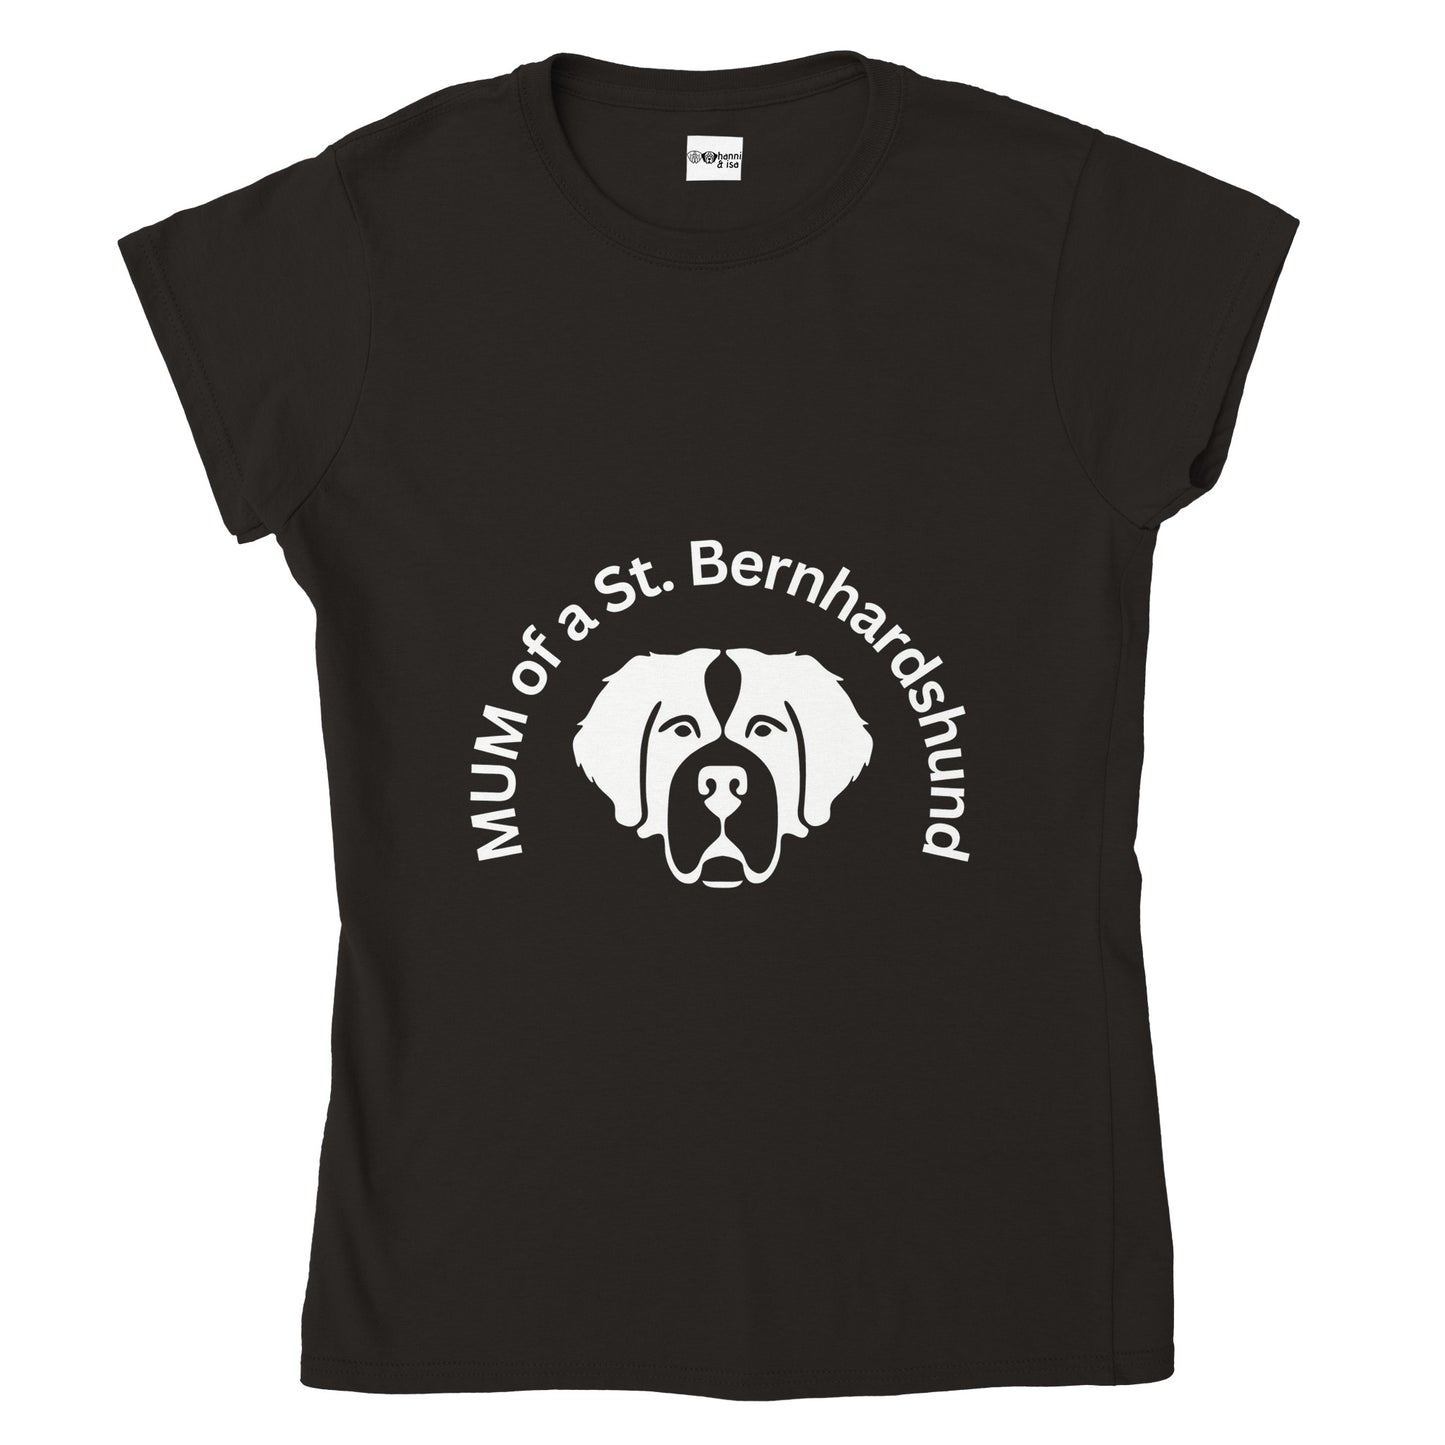 Mum of a St. Bernard Dog Women's T-Shirt